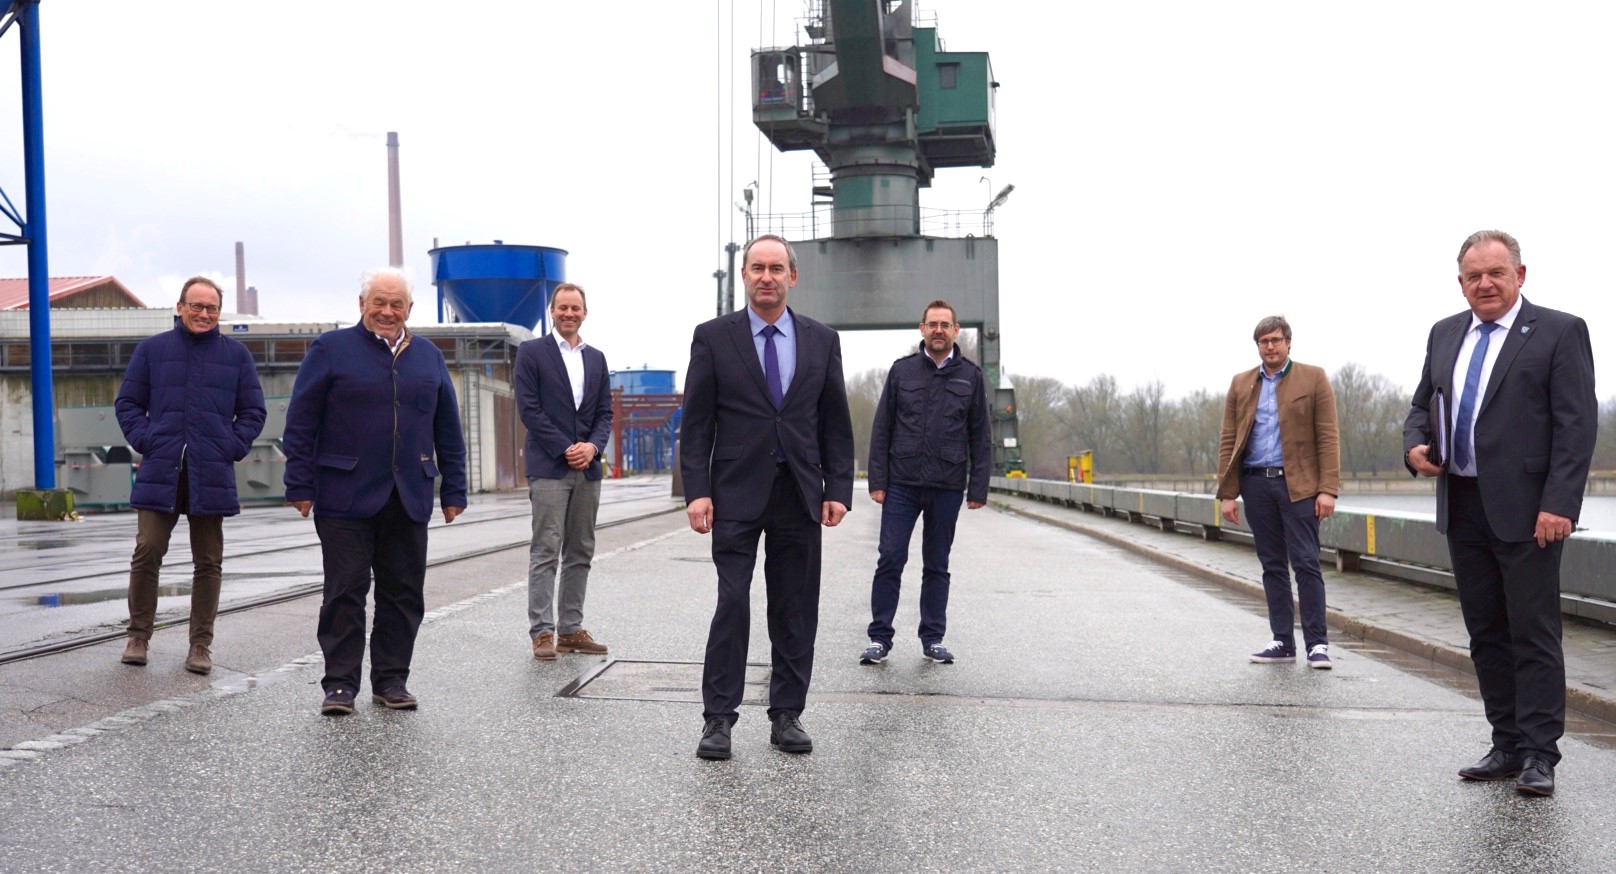 Besuch im Hafen Kelheim/Saal:  Wirtschaftsminister Aiwanger mit Vertretern des Hafen Kelheim/Saal.